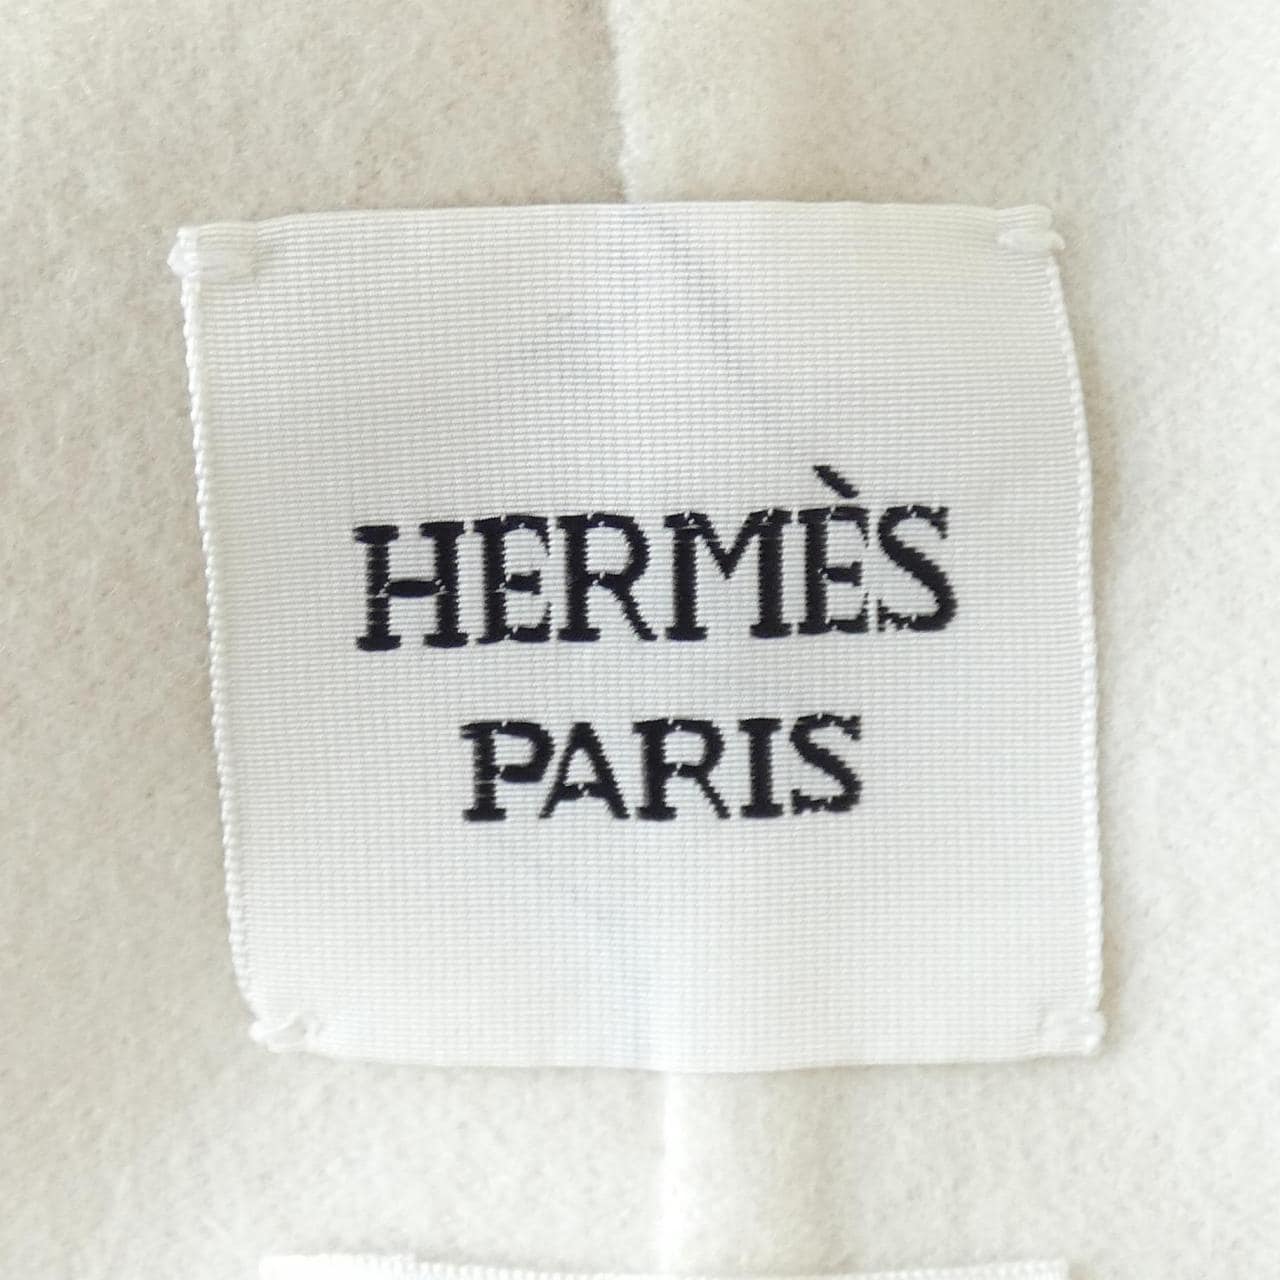 HERMES HERMES COURT